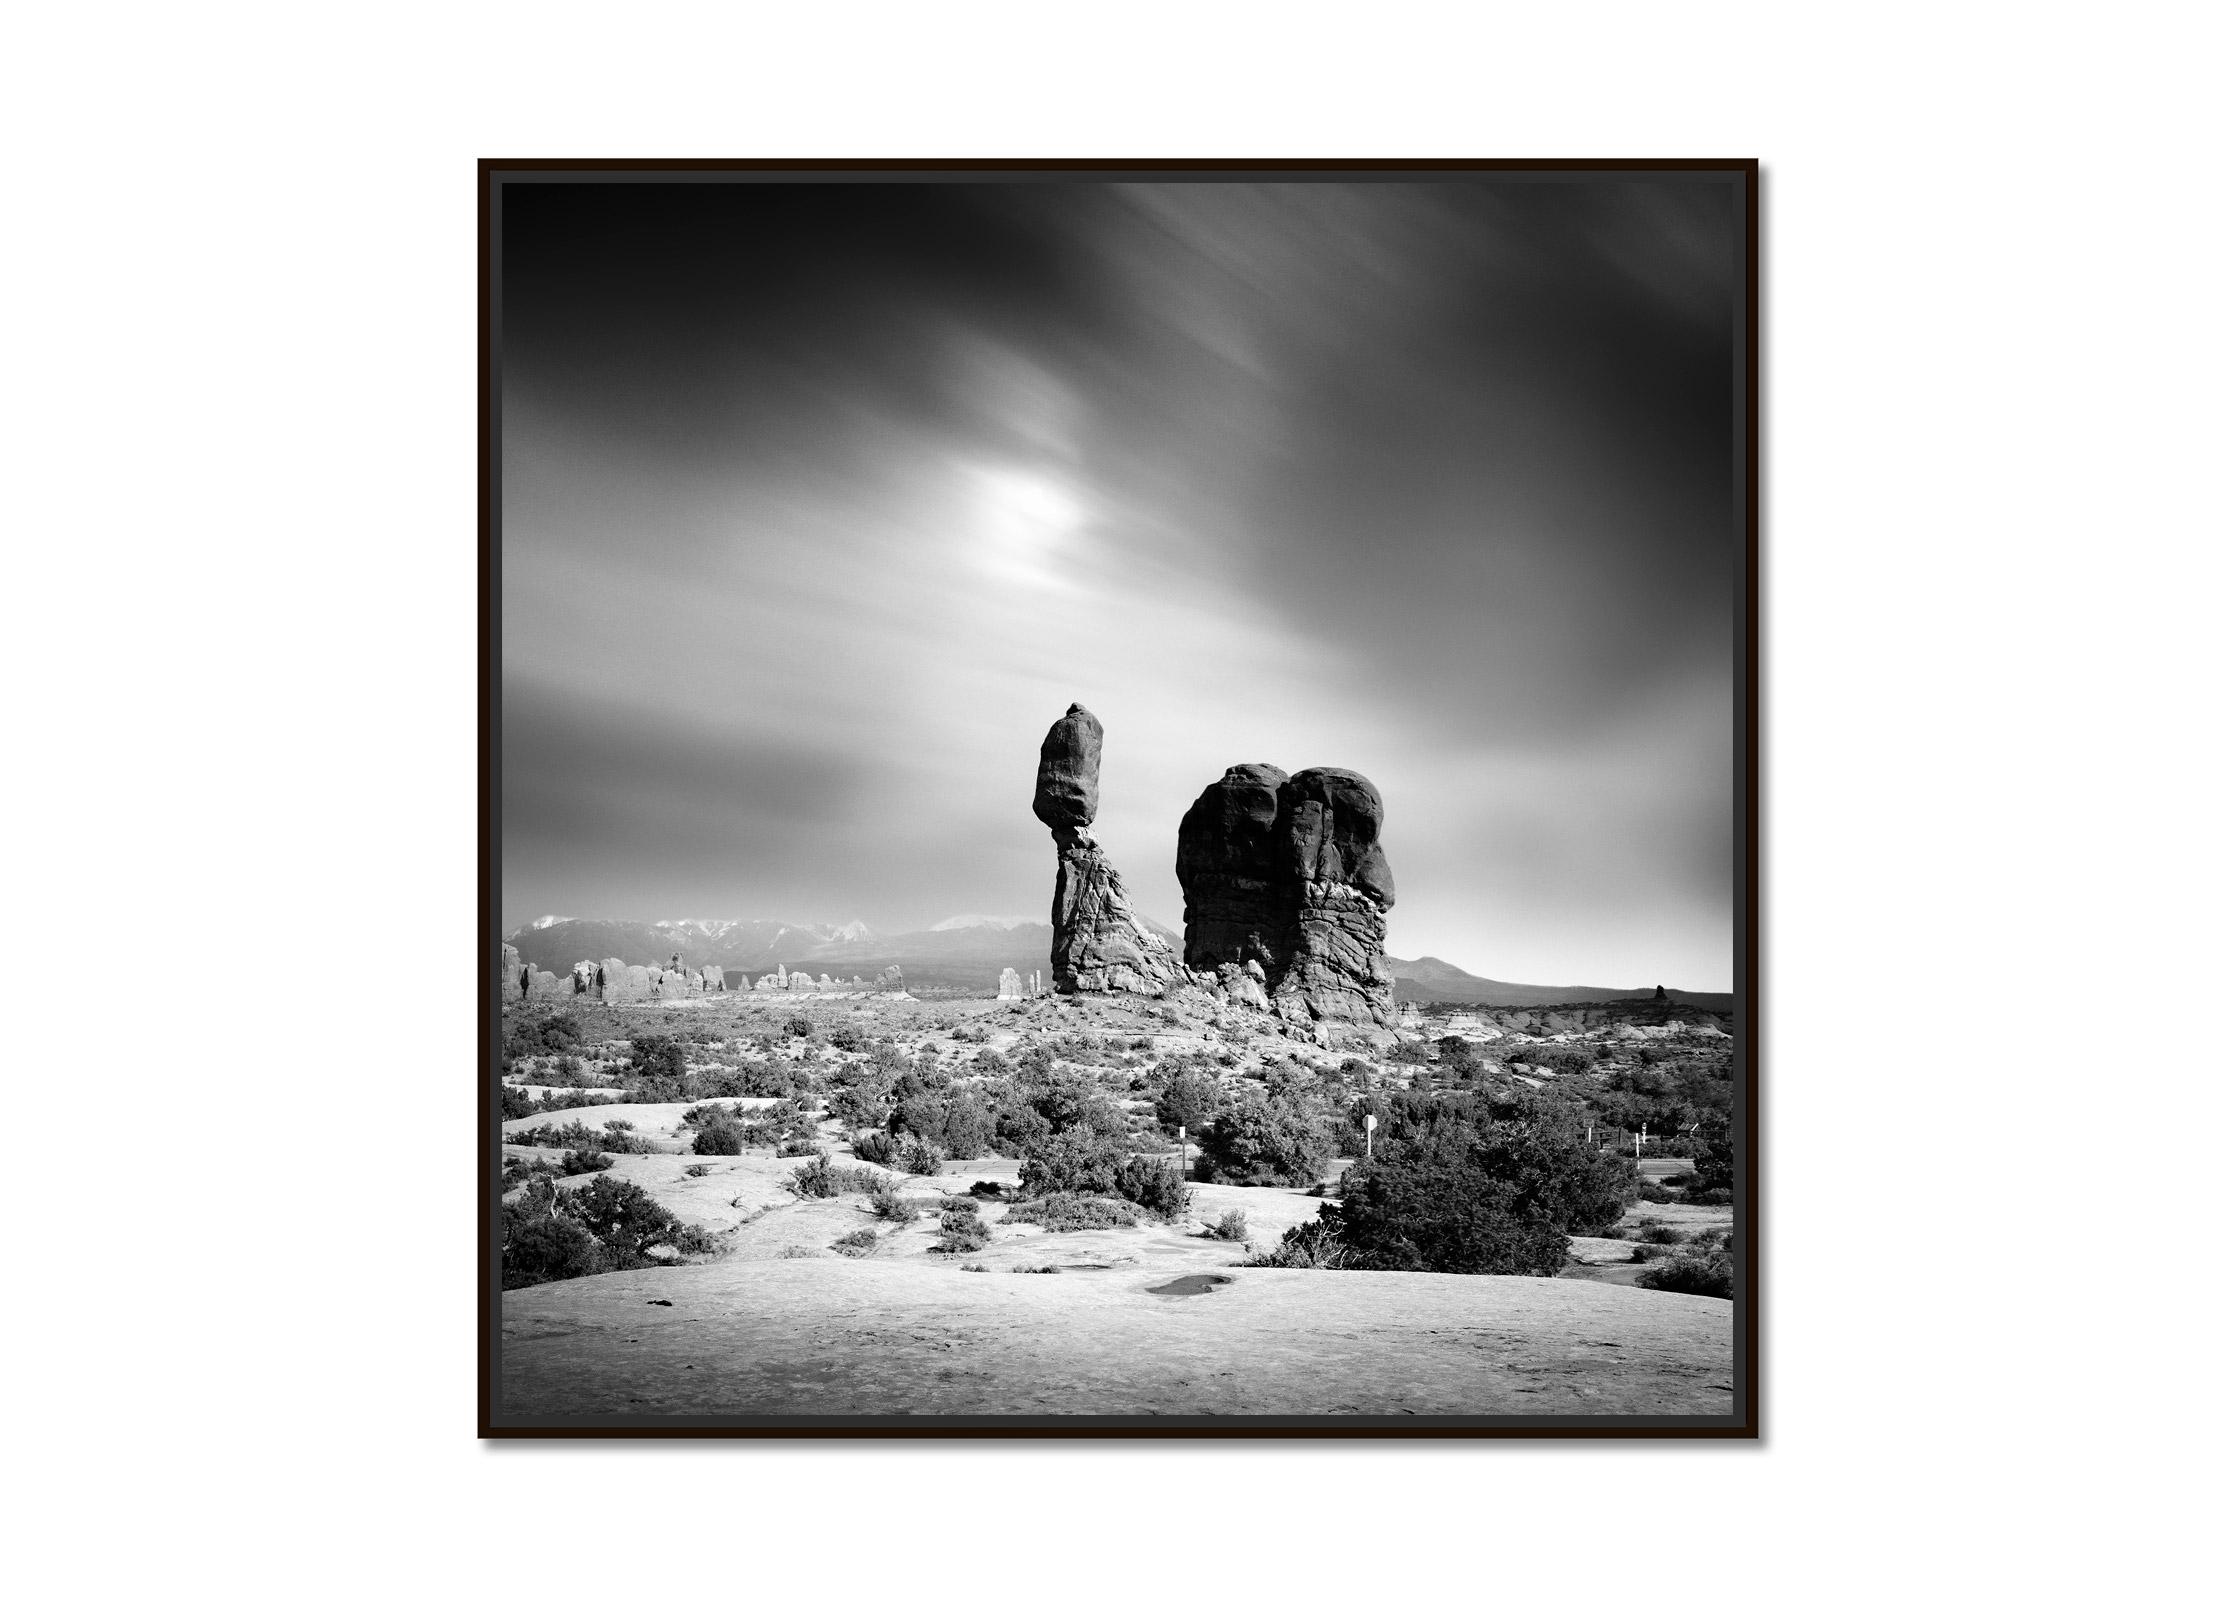 Wild West, Balanced Rock, Utah, USA, Schwarz-Weiß-Kunstfotografie, Landschaft – Photograph von Gerald Berghammer